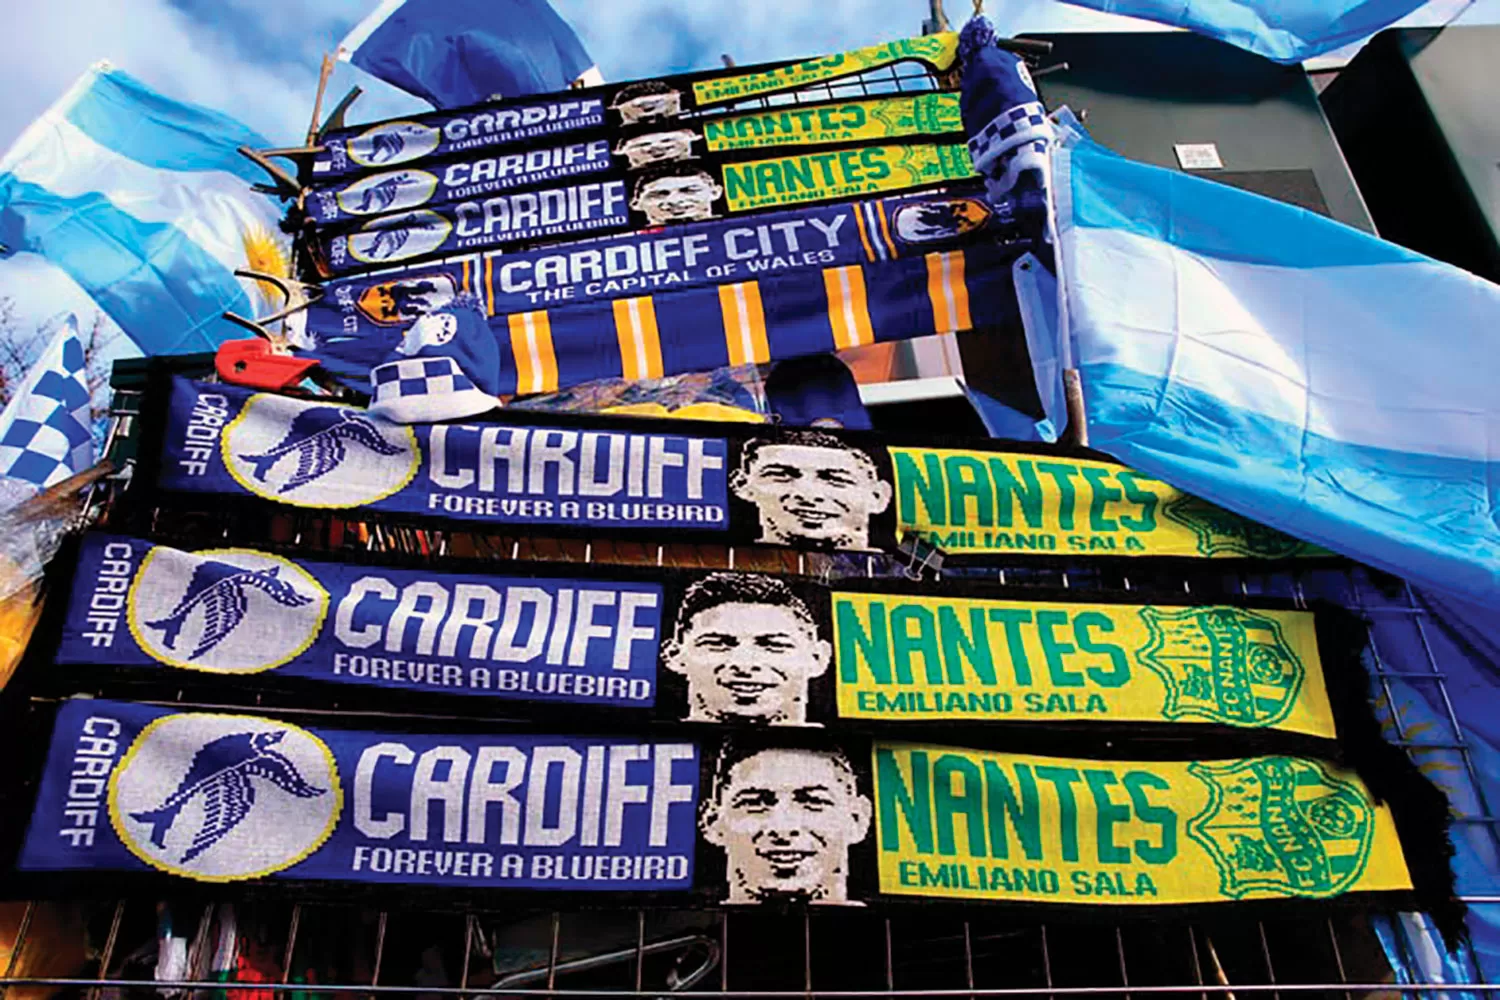 CASO EMILIANO SALA. Sigue la disputa entre Nantes y Cardiff.